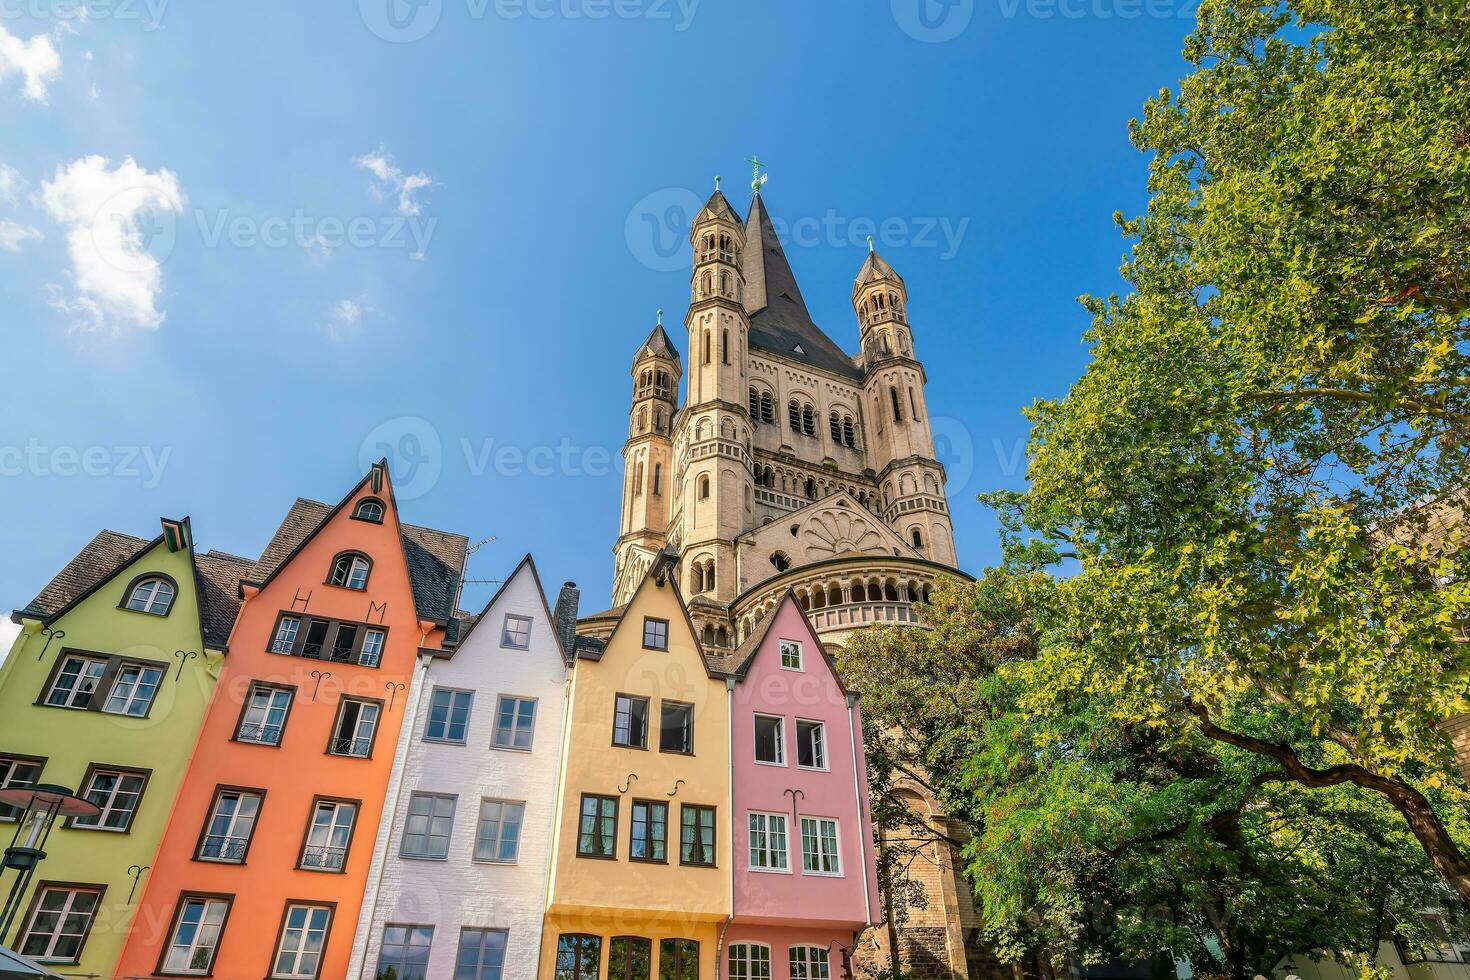 stadens centrum cologne stad horisont, stadsbild av Tyskland foto